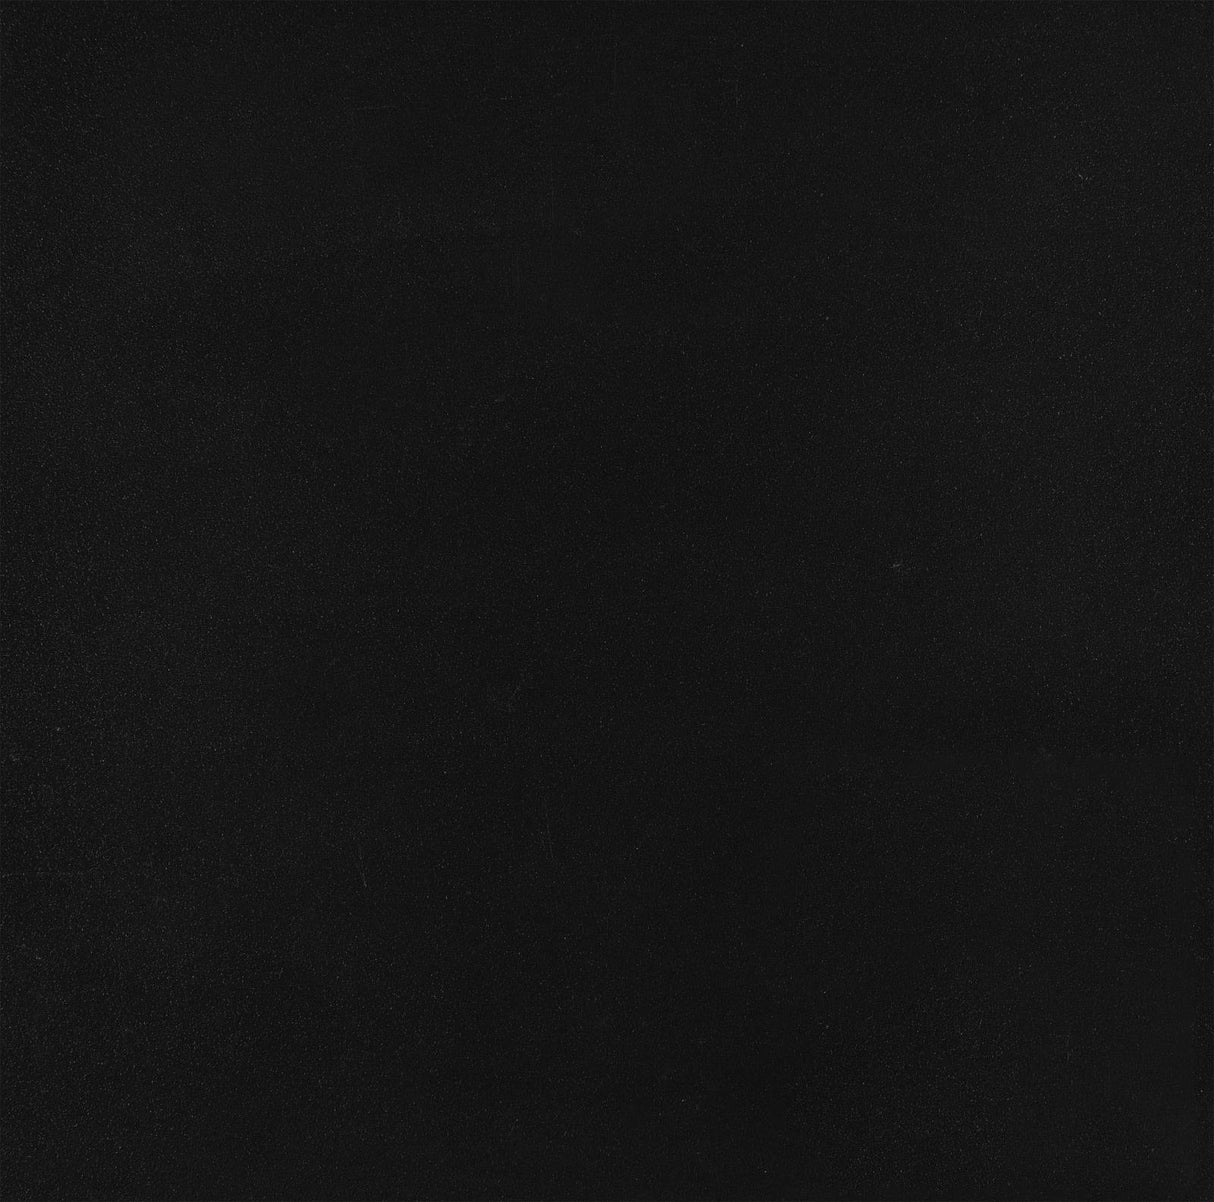 Delphinium 5-shelf Glass Curio Cabinet Black and Clear - 950170 - Luna Furniture